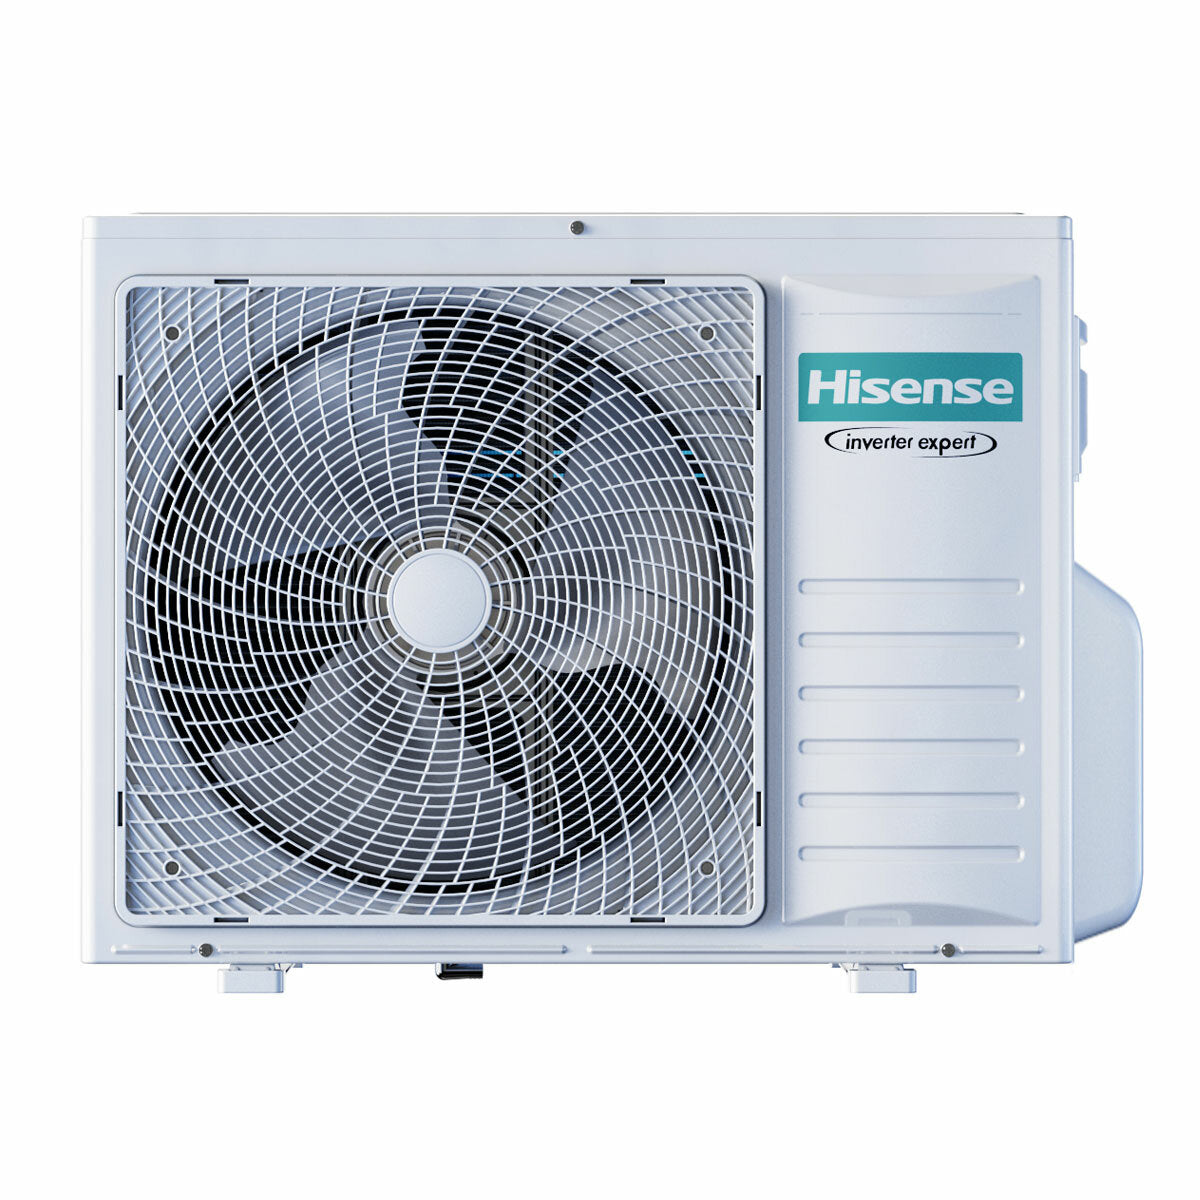 Hisense Hi-Comfort quadri split air conditioner 7000+9000+9000+9000 BTU inverter A++ wifi outdoor unit 8 kW